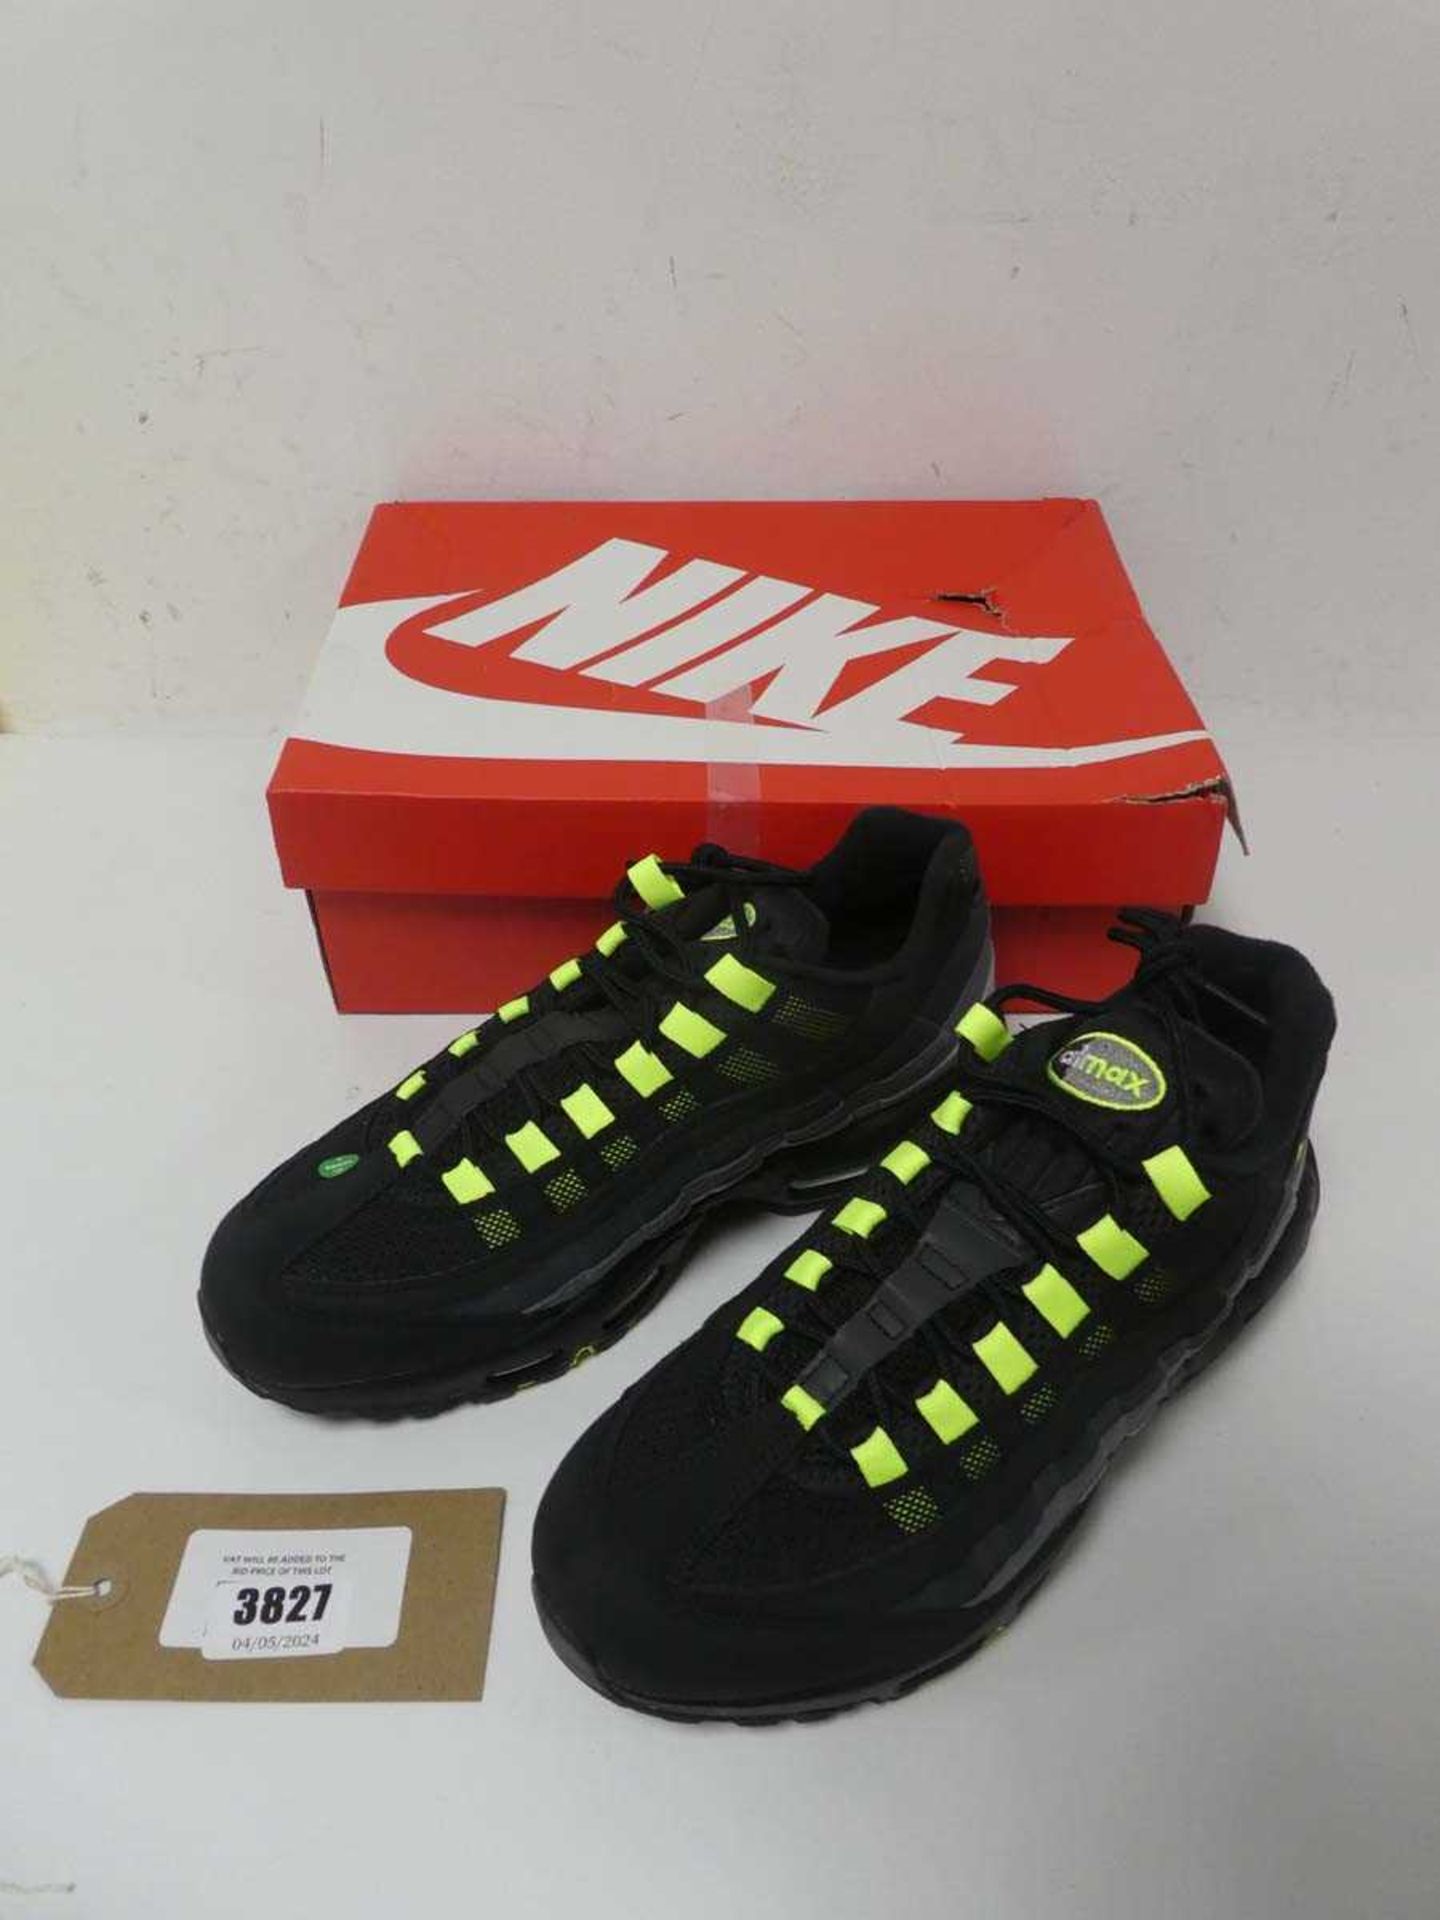 +VAT 1 x Nike Air Max trainers, UK 8